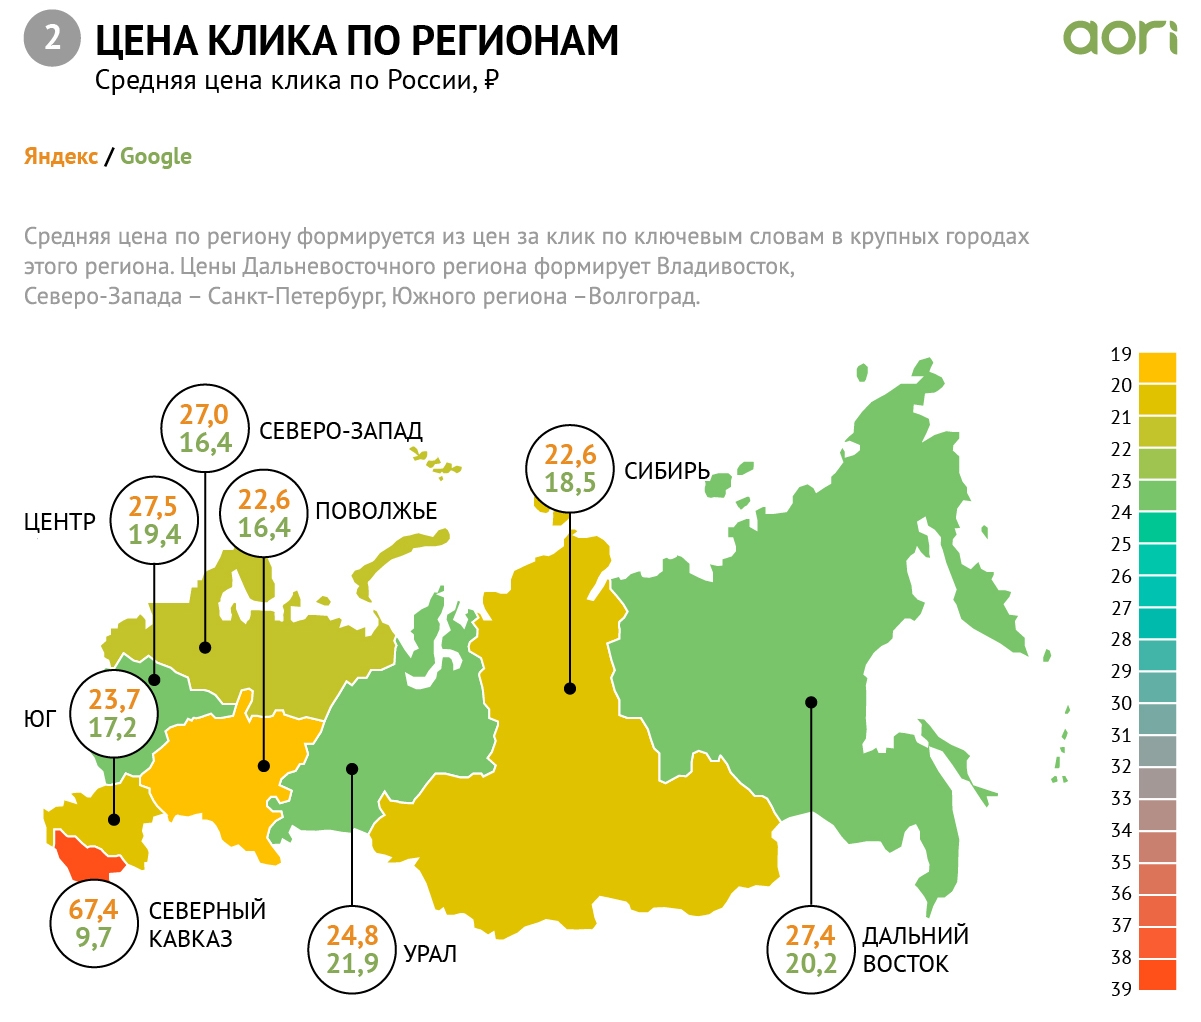 Инфографика со средней ценой клика в разных регионах России